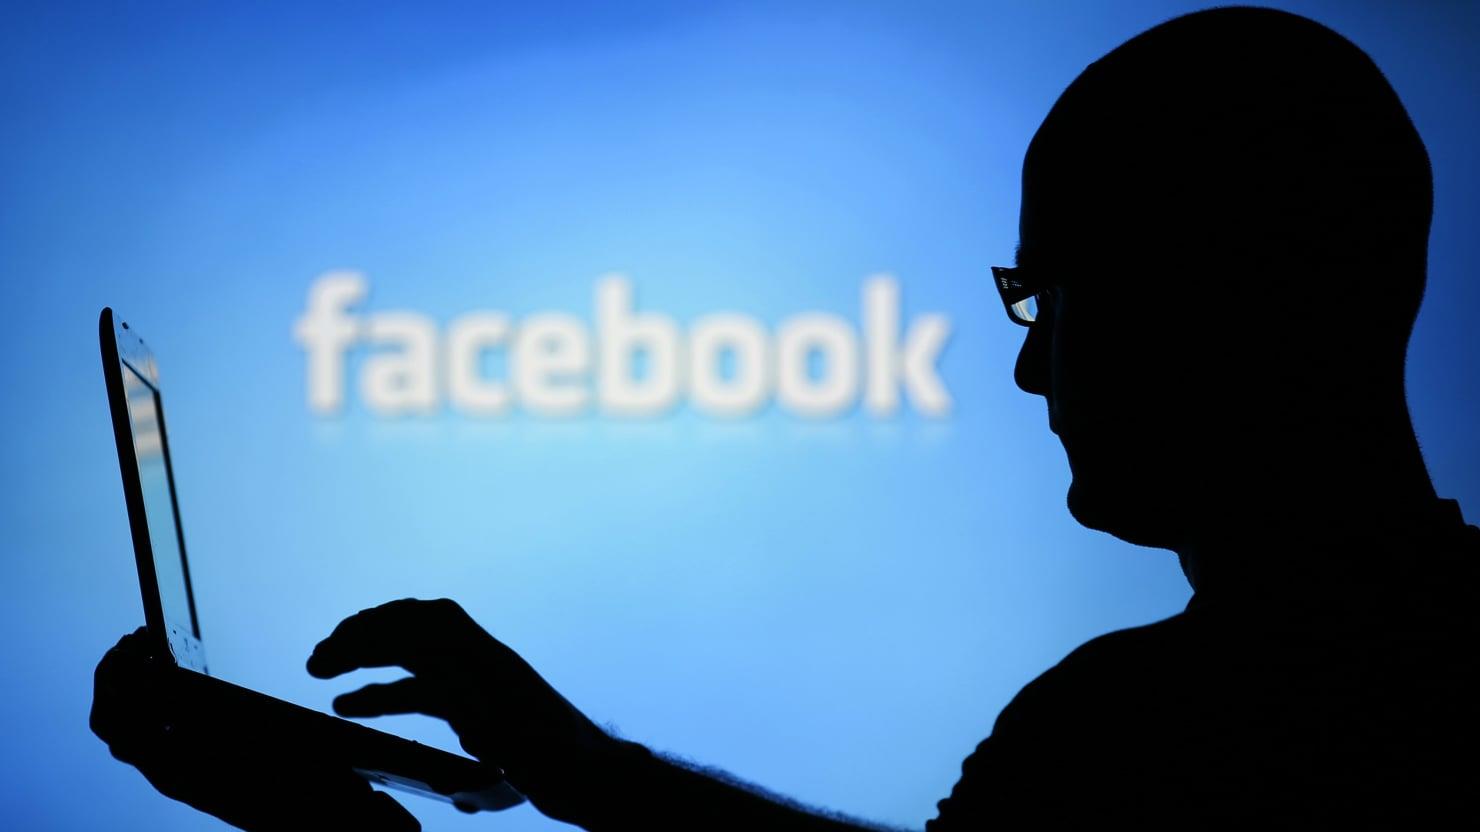  مسئول سابق في "فيسبوك" يتهم الموقع بـ"تدمير المجت